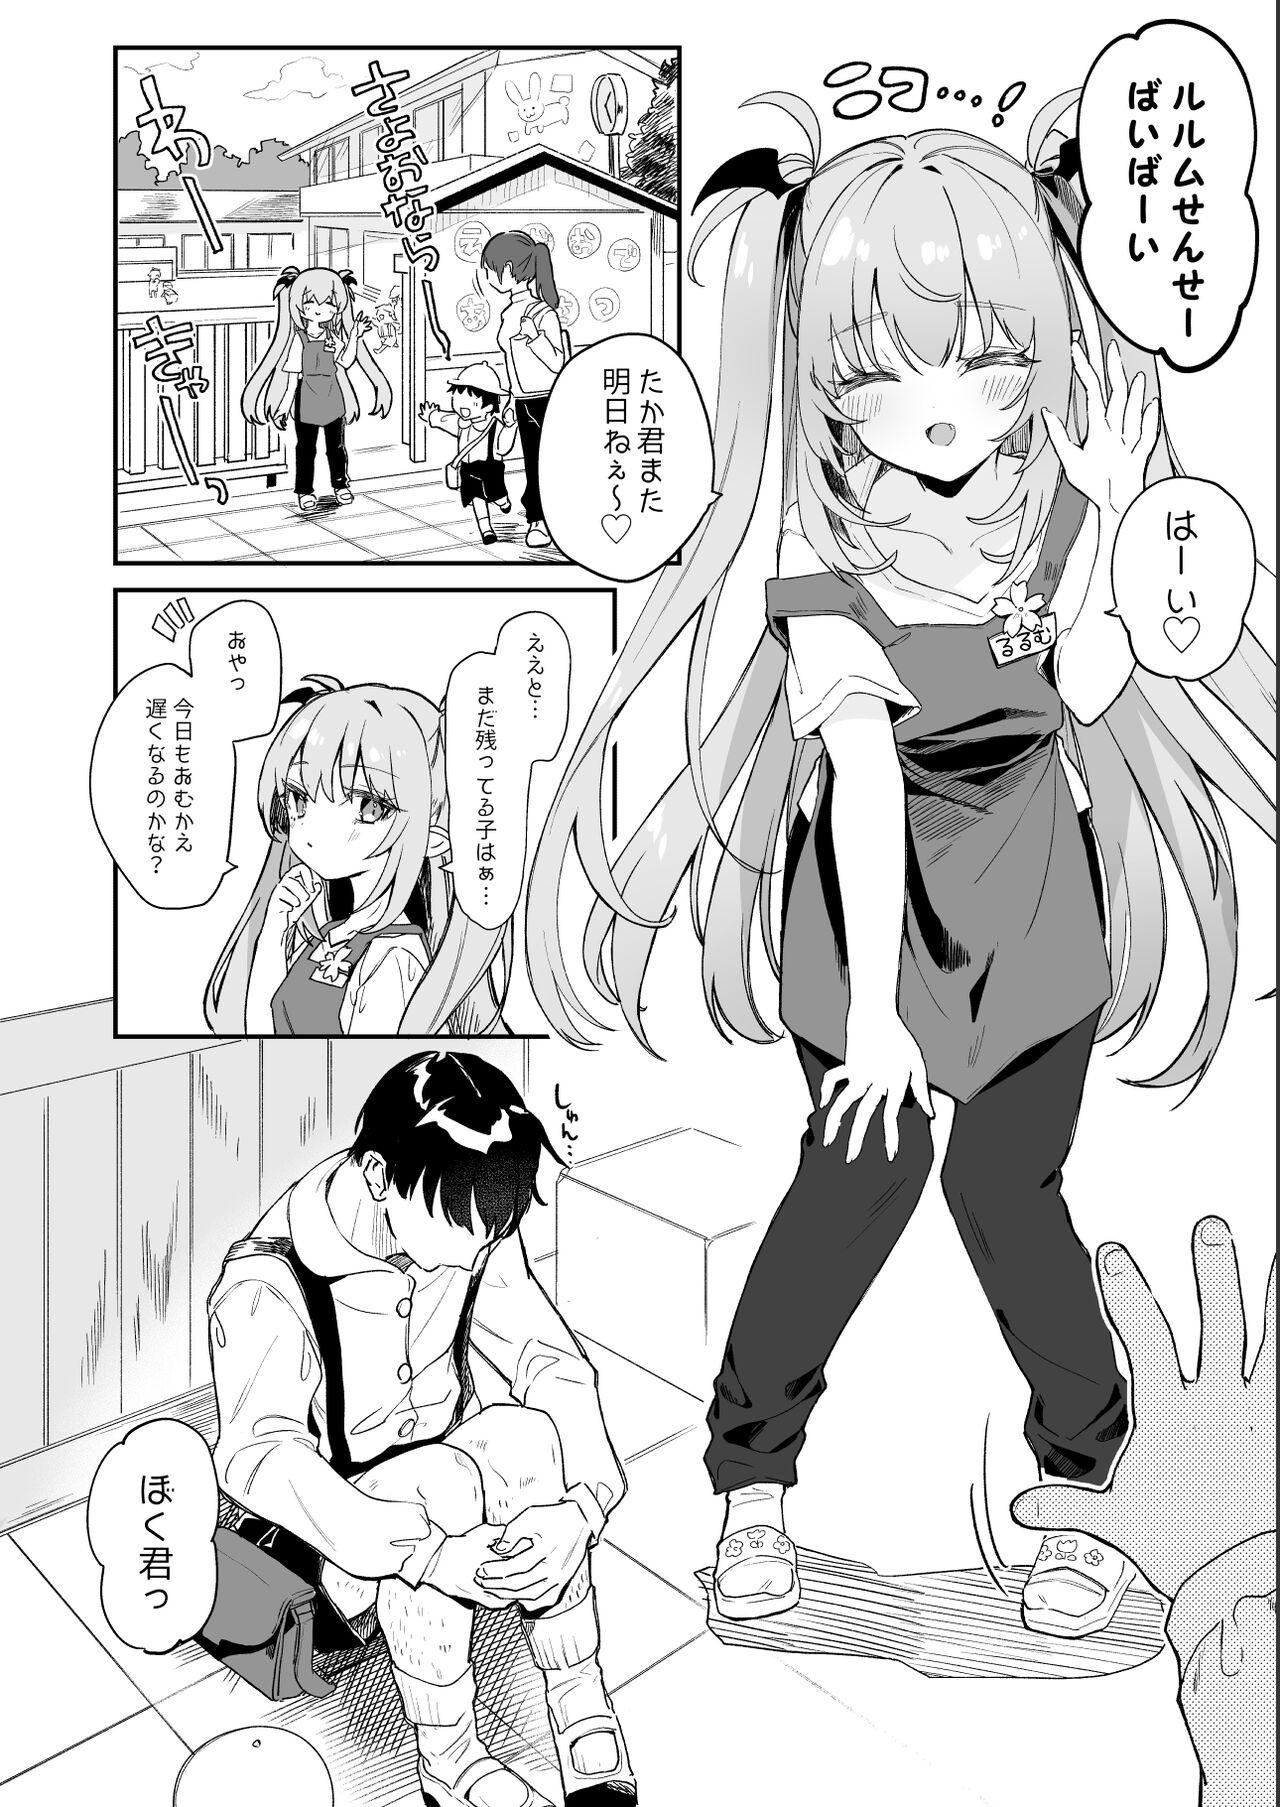 Flashing [Tamano Kedama] Kodomo no Hi (Imishin) ni Mukete Manga o Kaku - Original Transex - Page 4